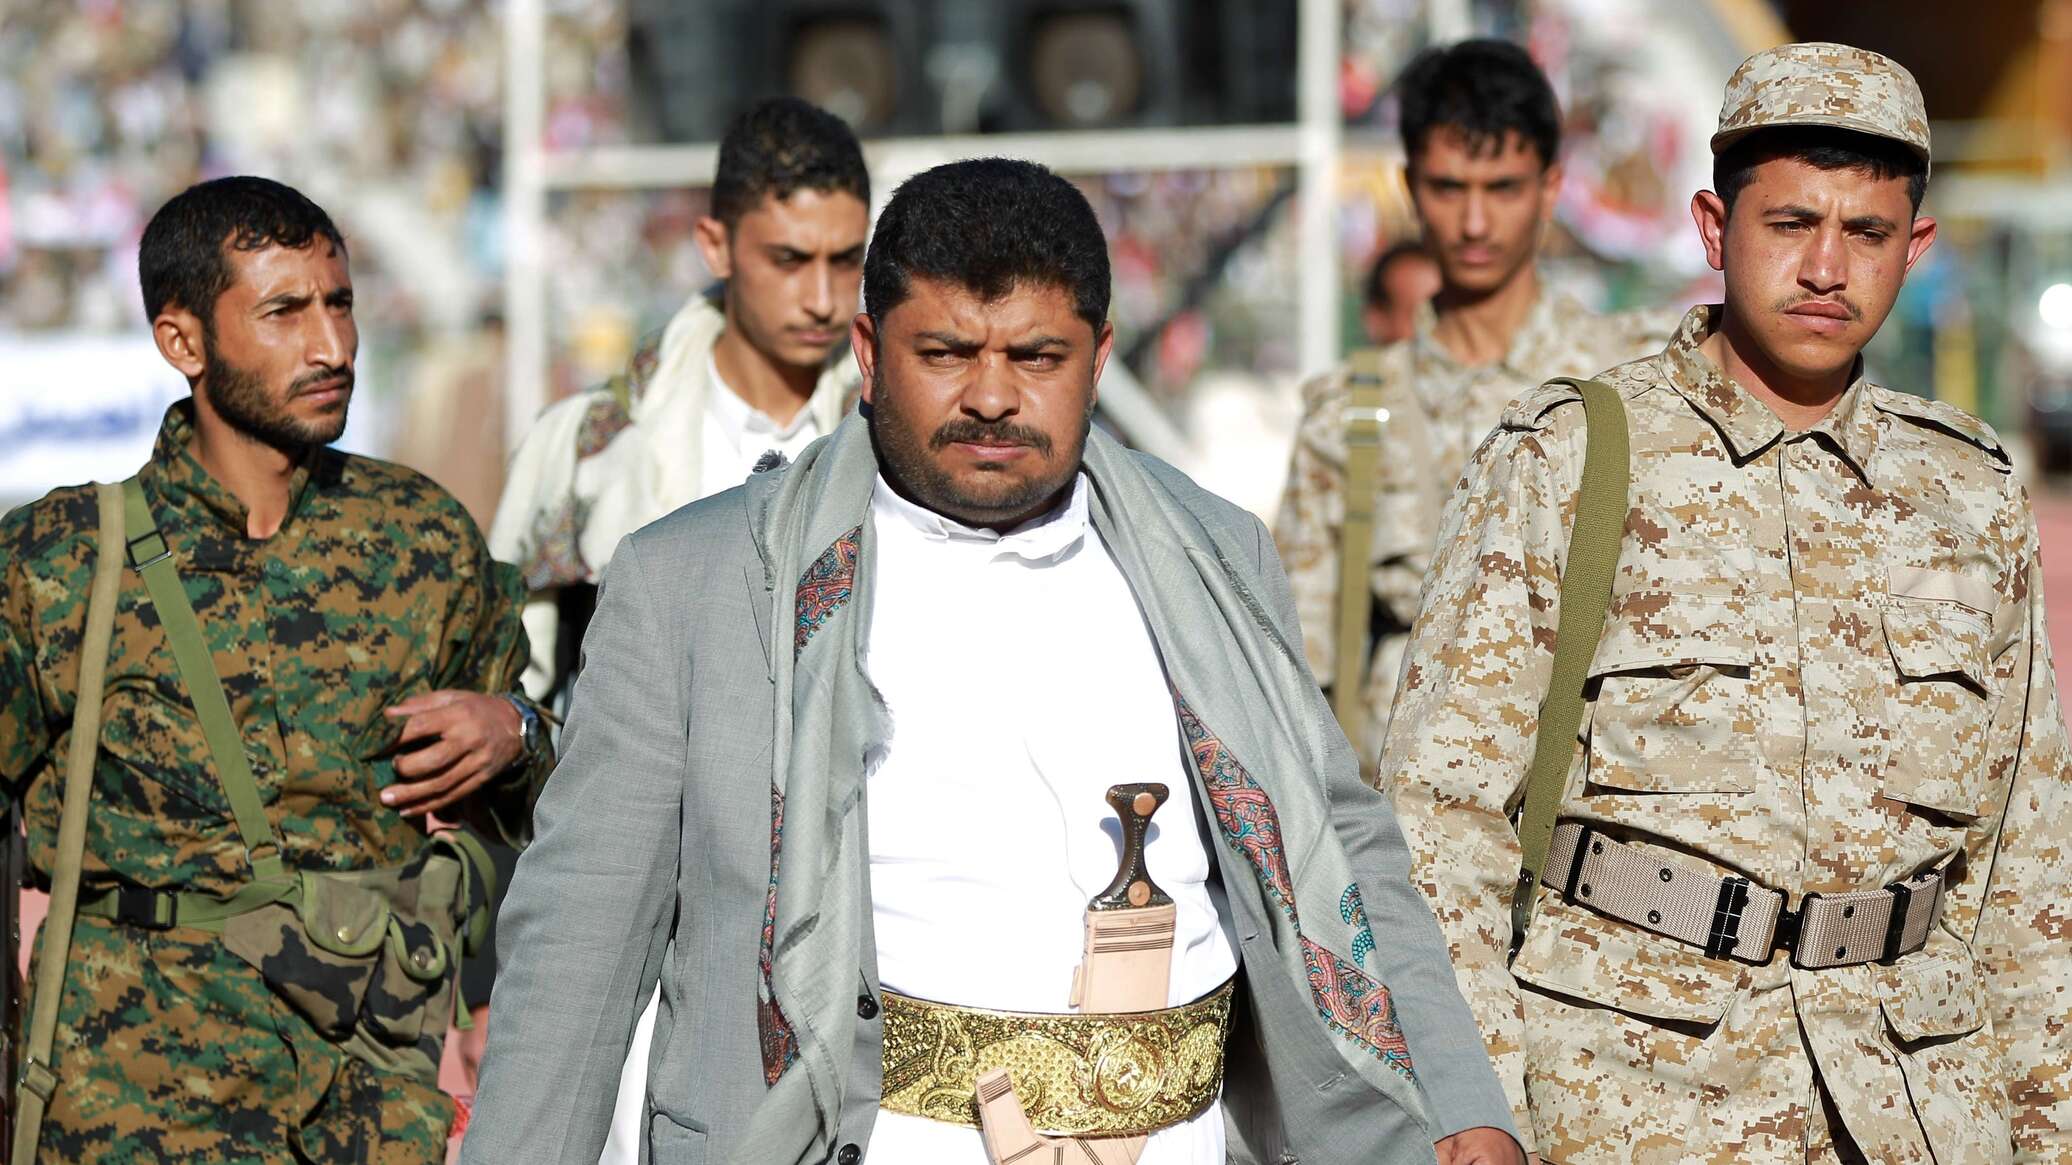 جماعة "أنصار الله" اليمنية تحذر الولايات المتحدة من التصعيد العسكري ضدها